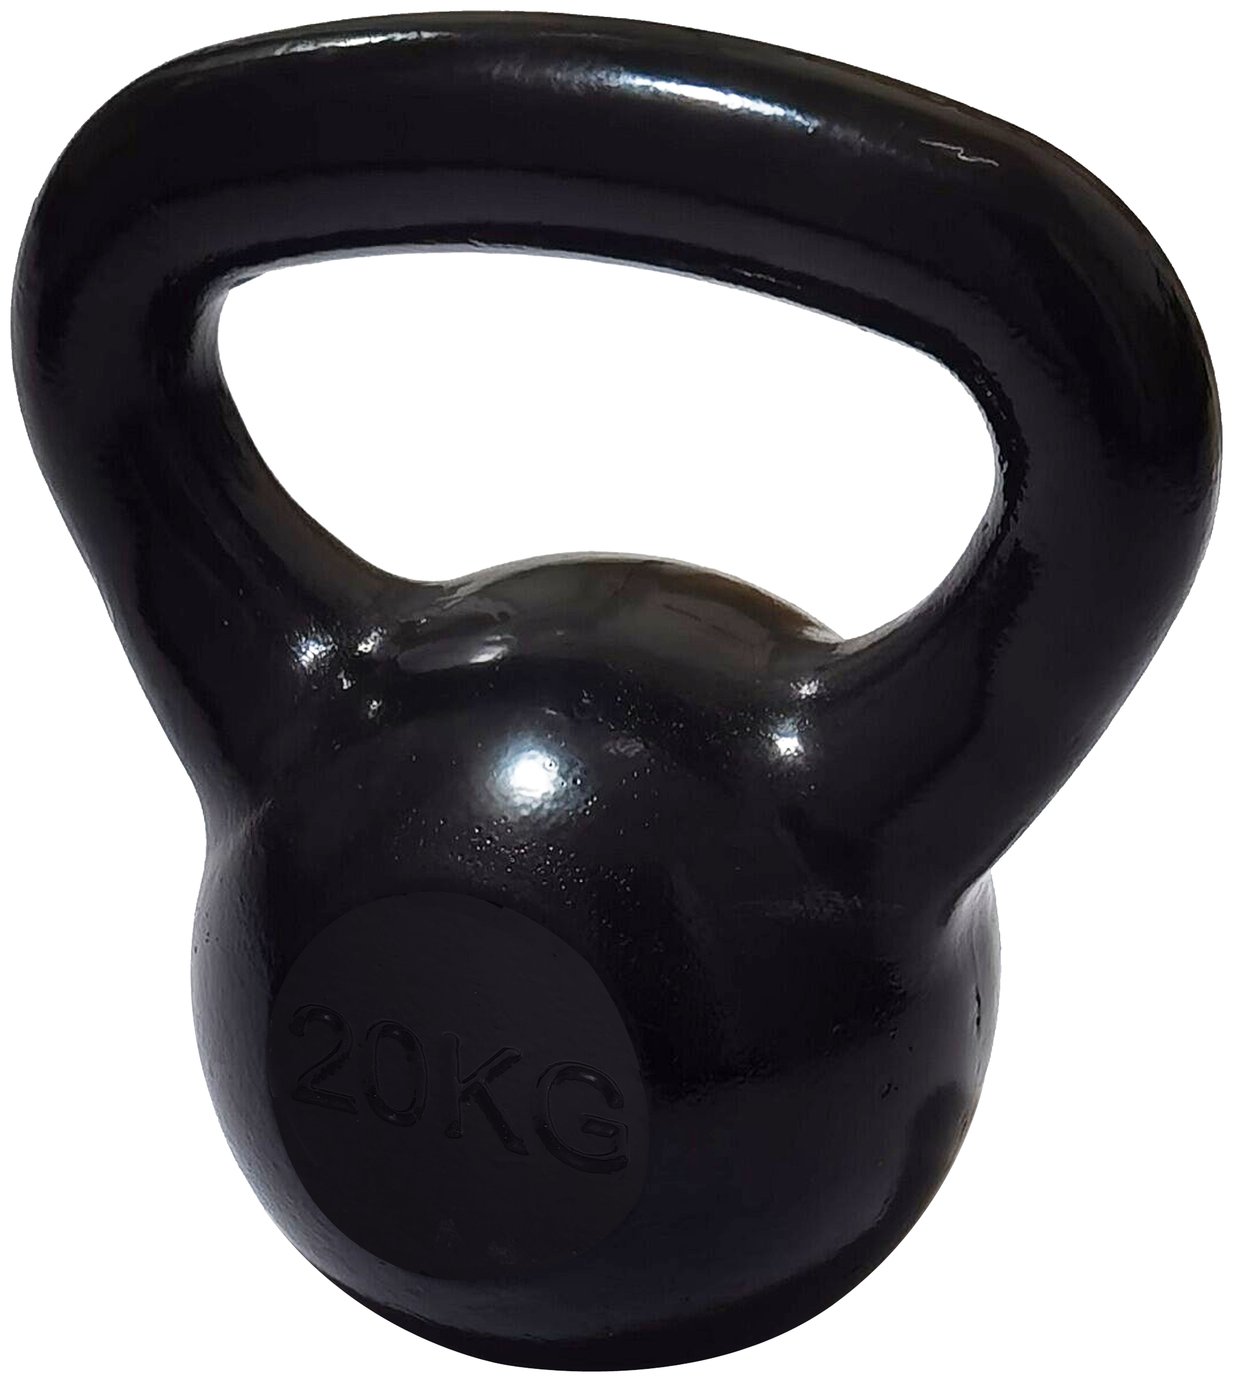 Pro Fitness 20KG Cast Iron Kettlebell - Black